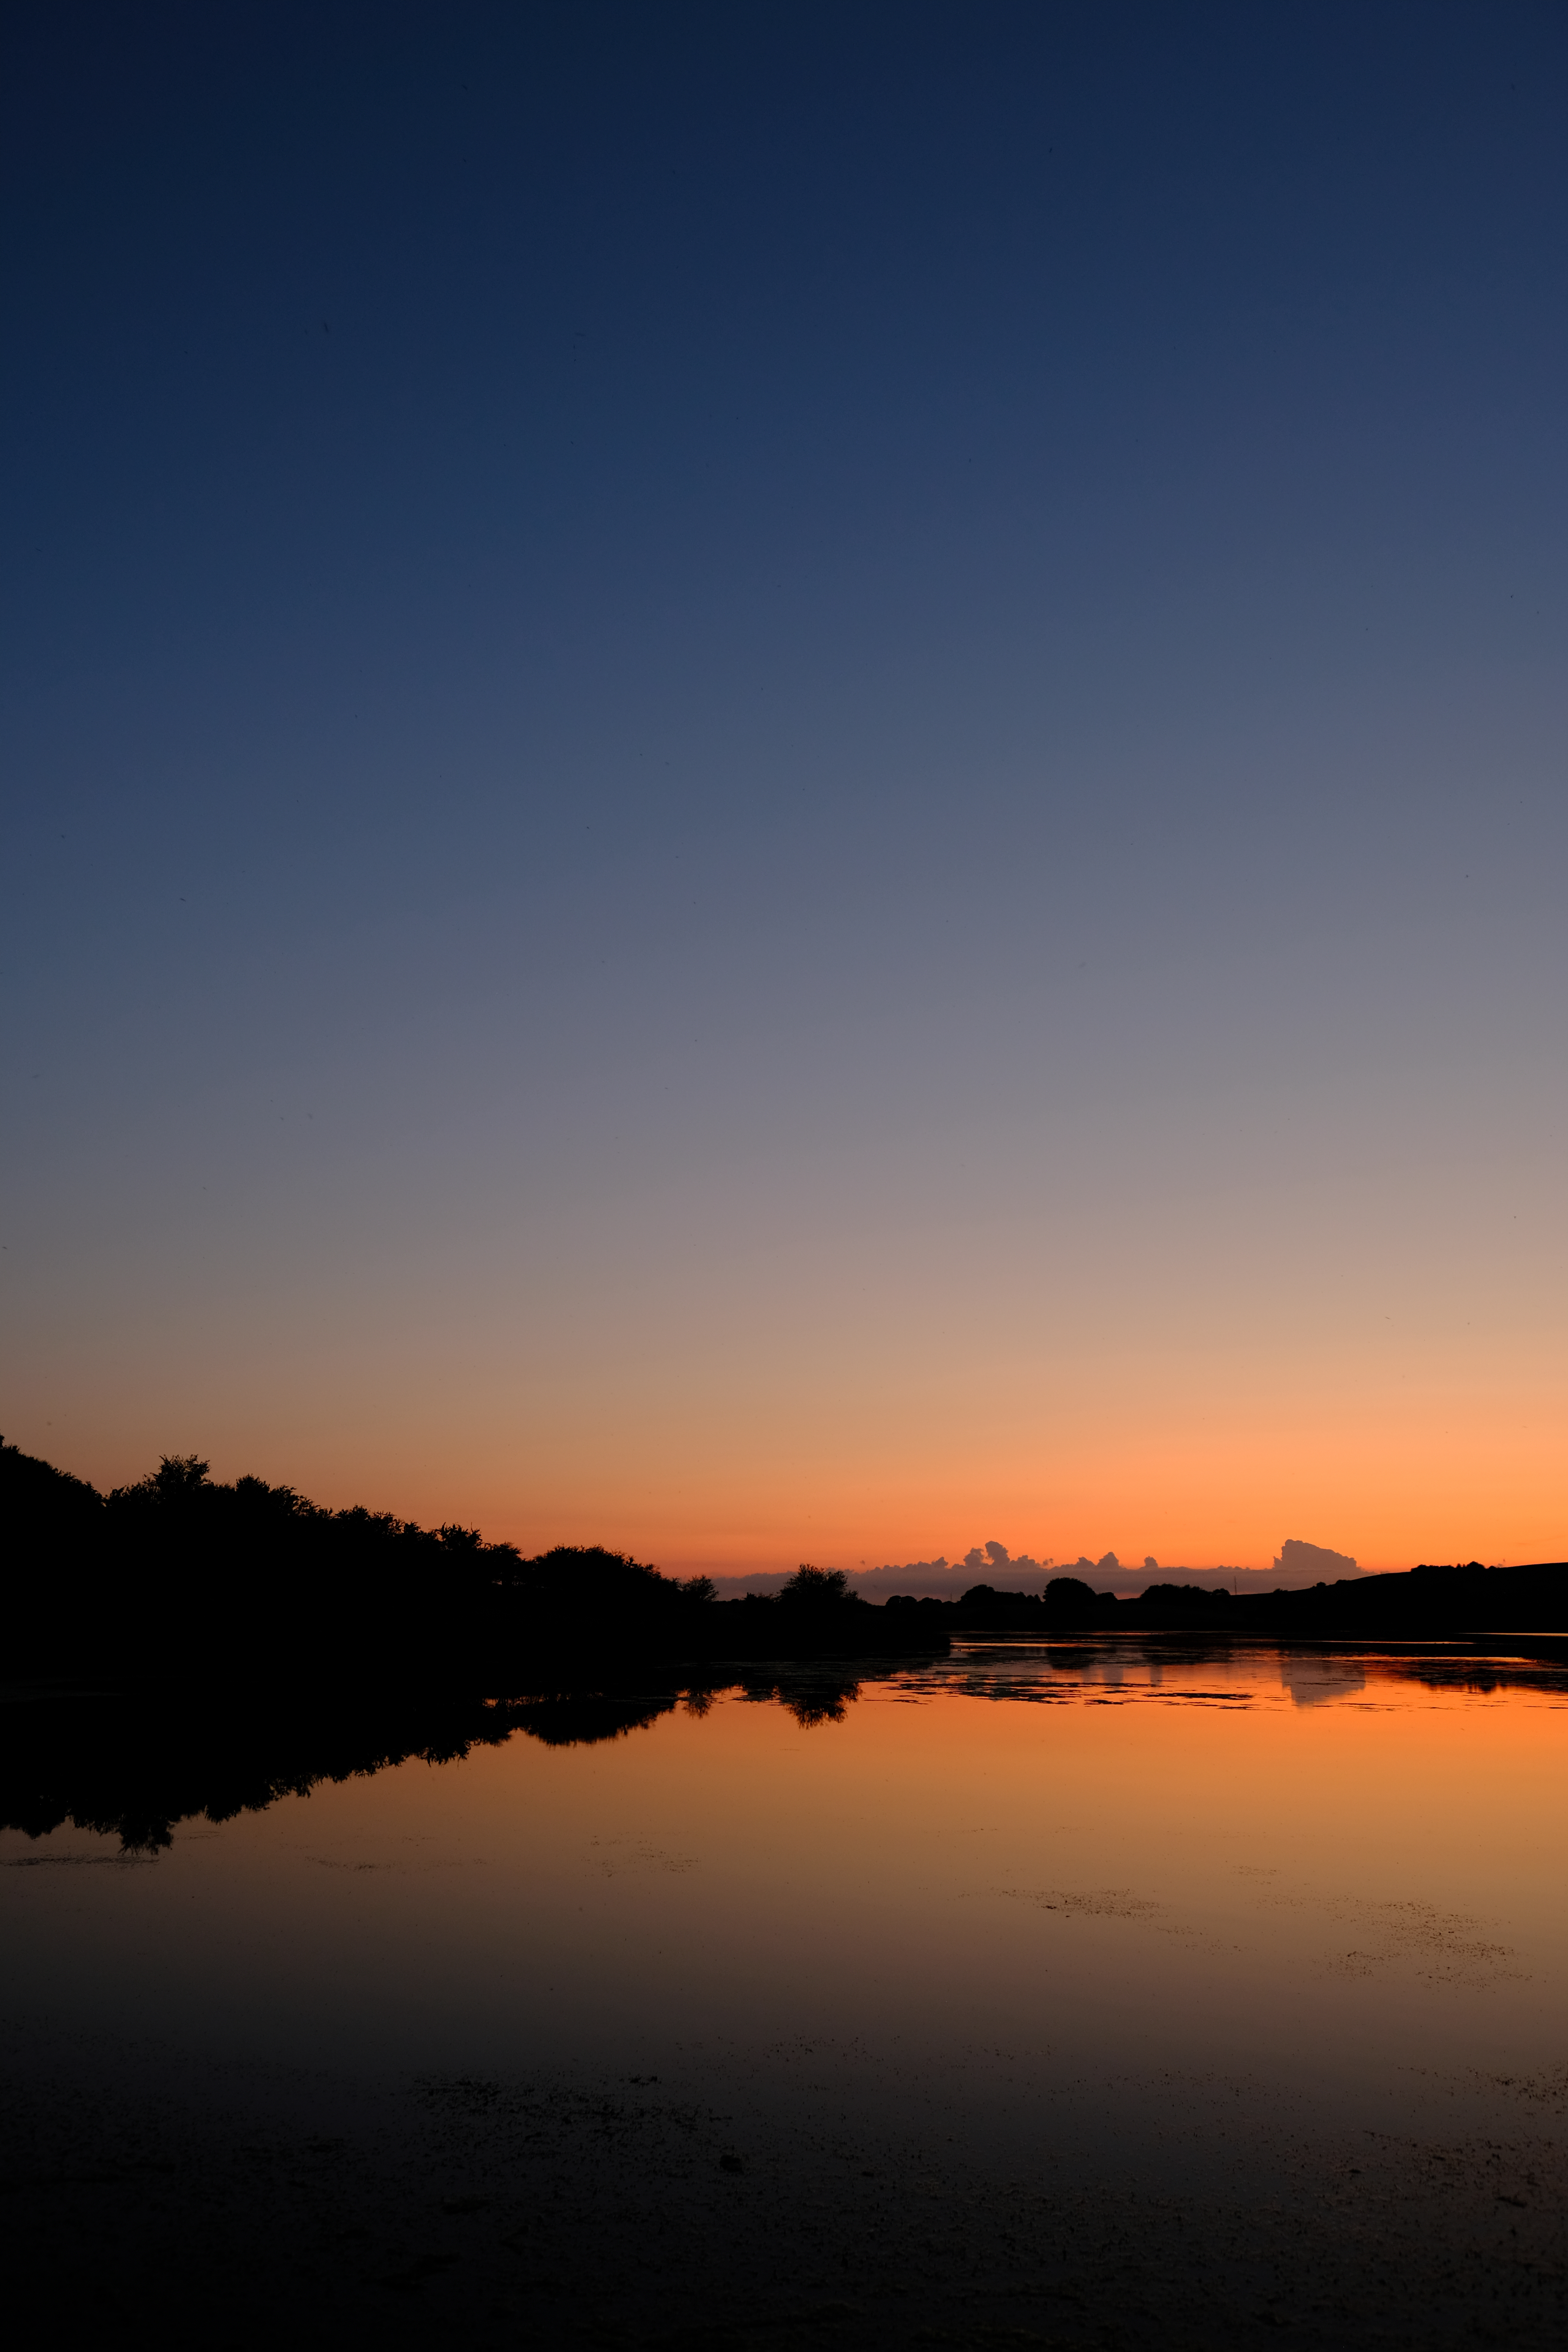 twilight, landscape, nature, sunset, lake, dark, dusk 1080p